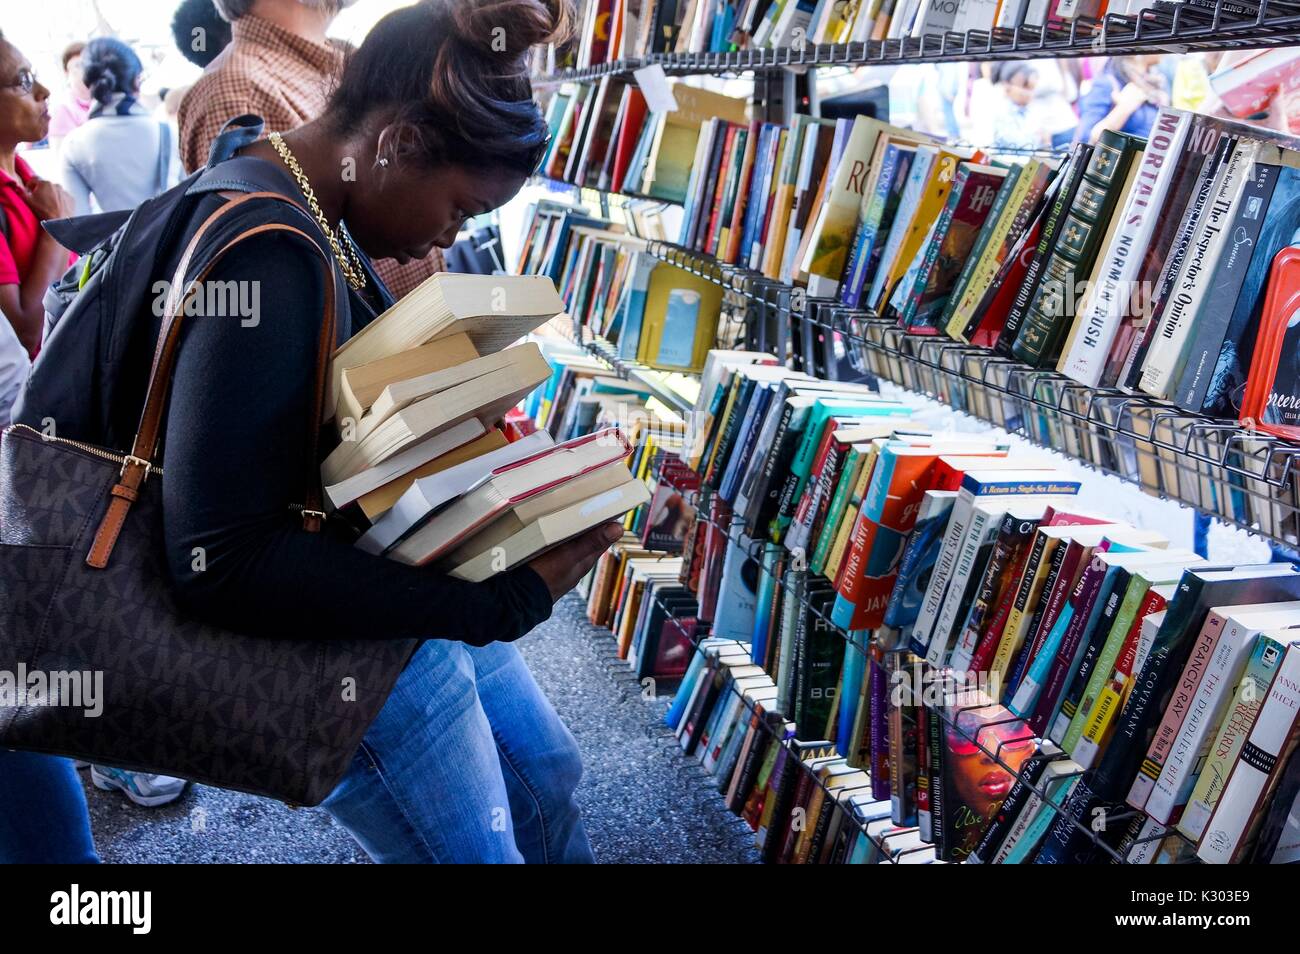 Eine junge Frau kämpft, einen schiefen Stapel Bücher in ihren Armen zu halten, während Sie die Titel der Bücher auf einem Regal beobachtet während Baltimore Book Festival, Baltimore, Maryland, 2013. Mit freundlicher Genehmigung von Eric Chen. Stockfoto